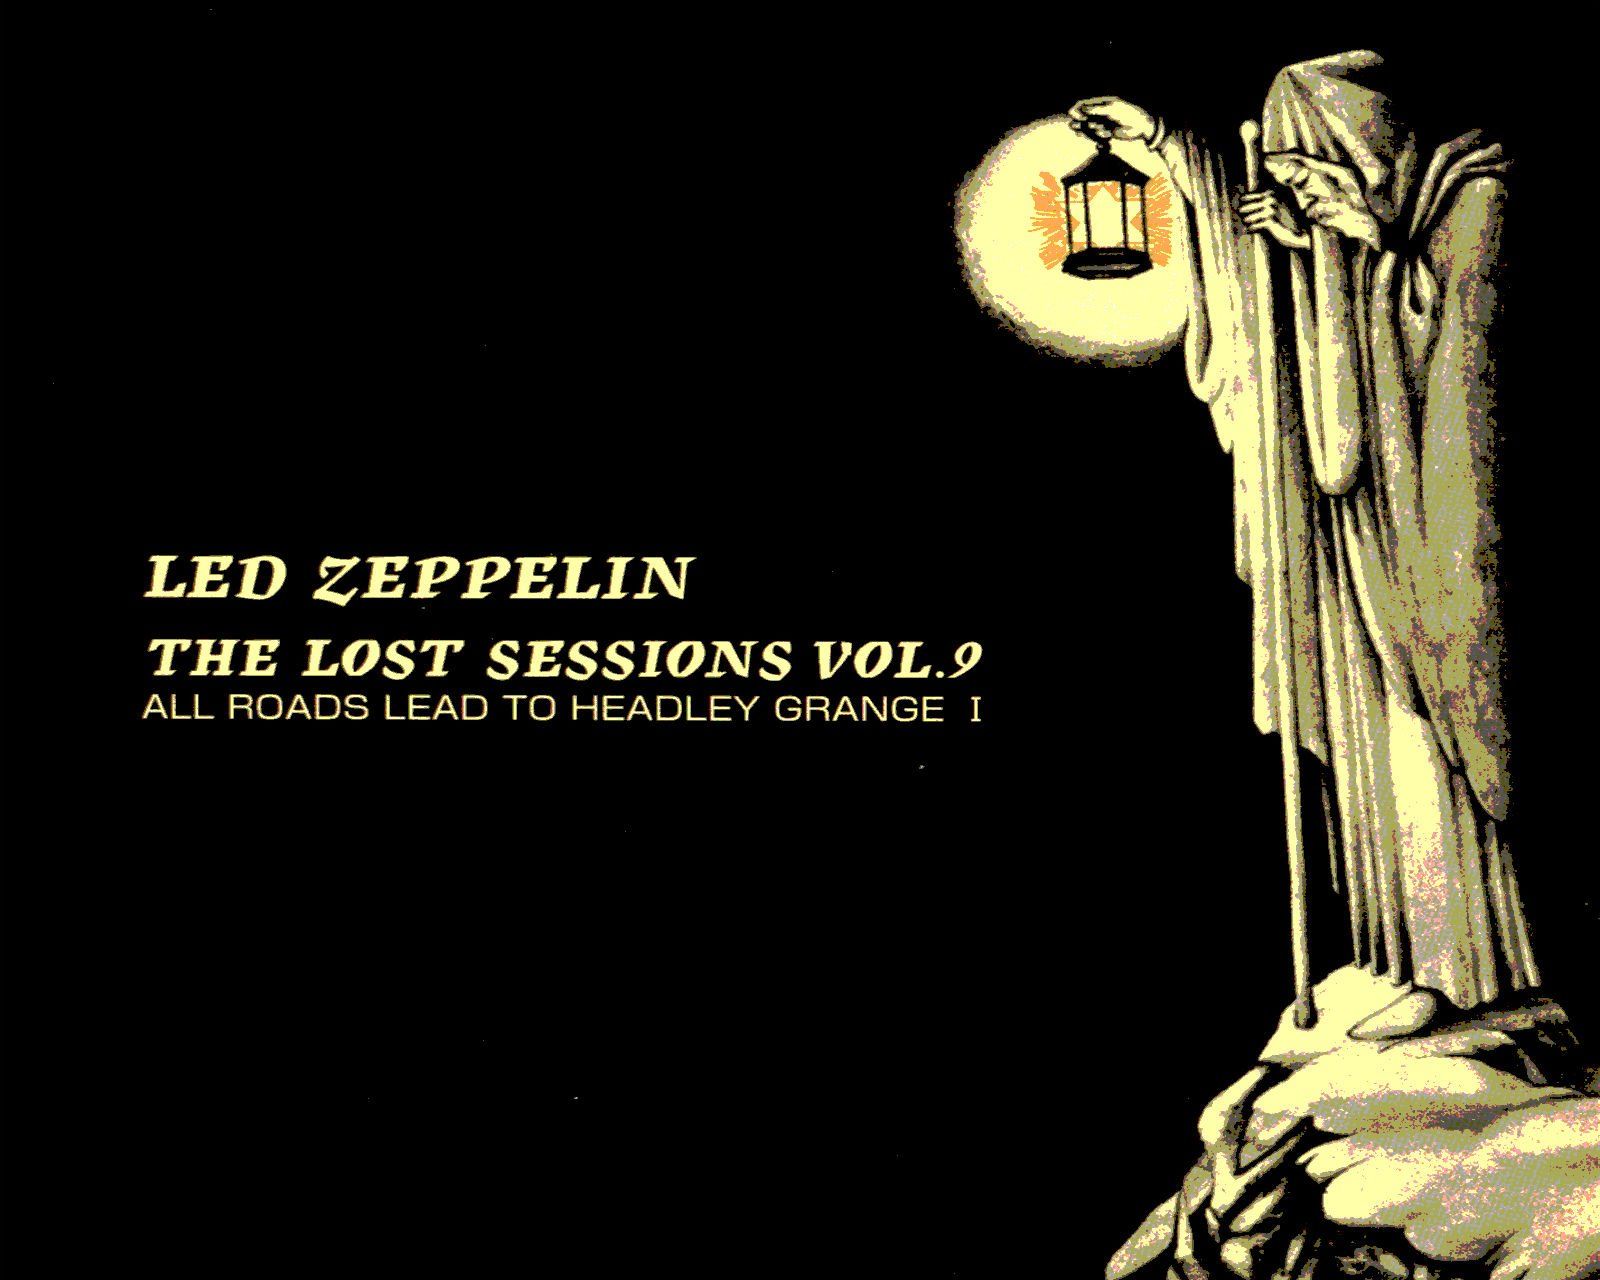 Led Zeppelin wallpaper | 1920x1080 | 248901 | WallpaperUP